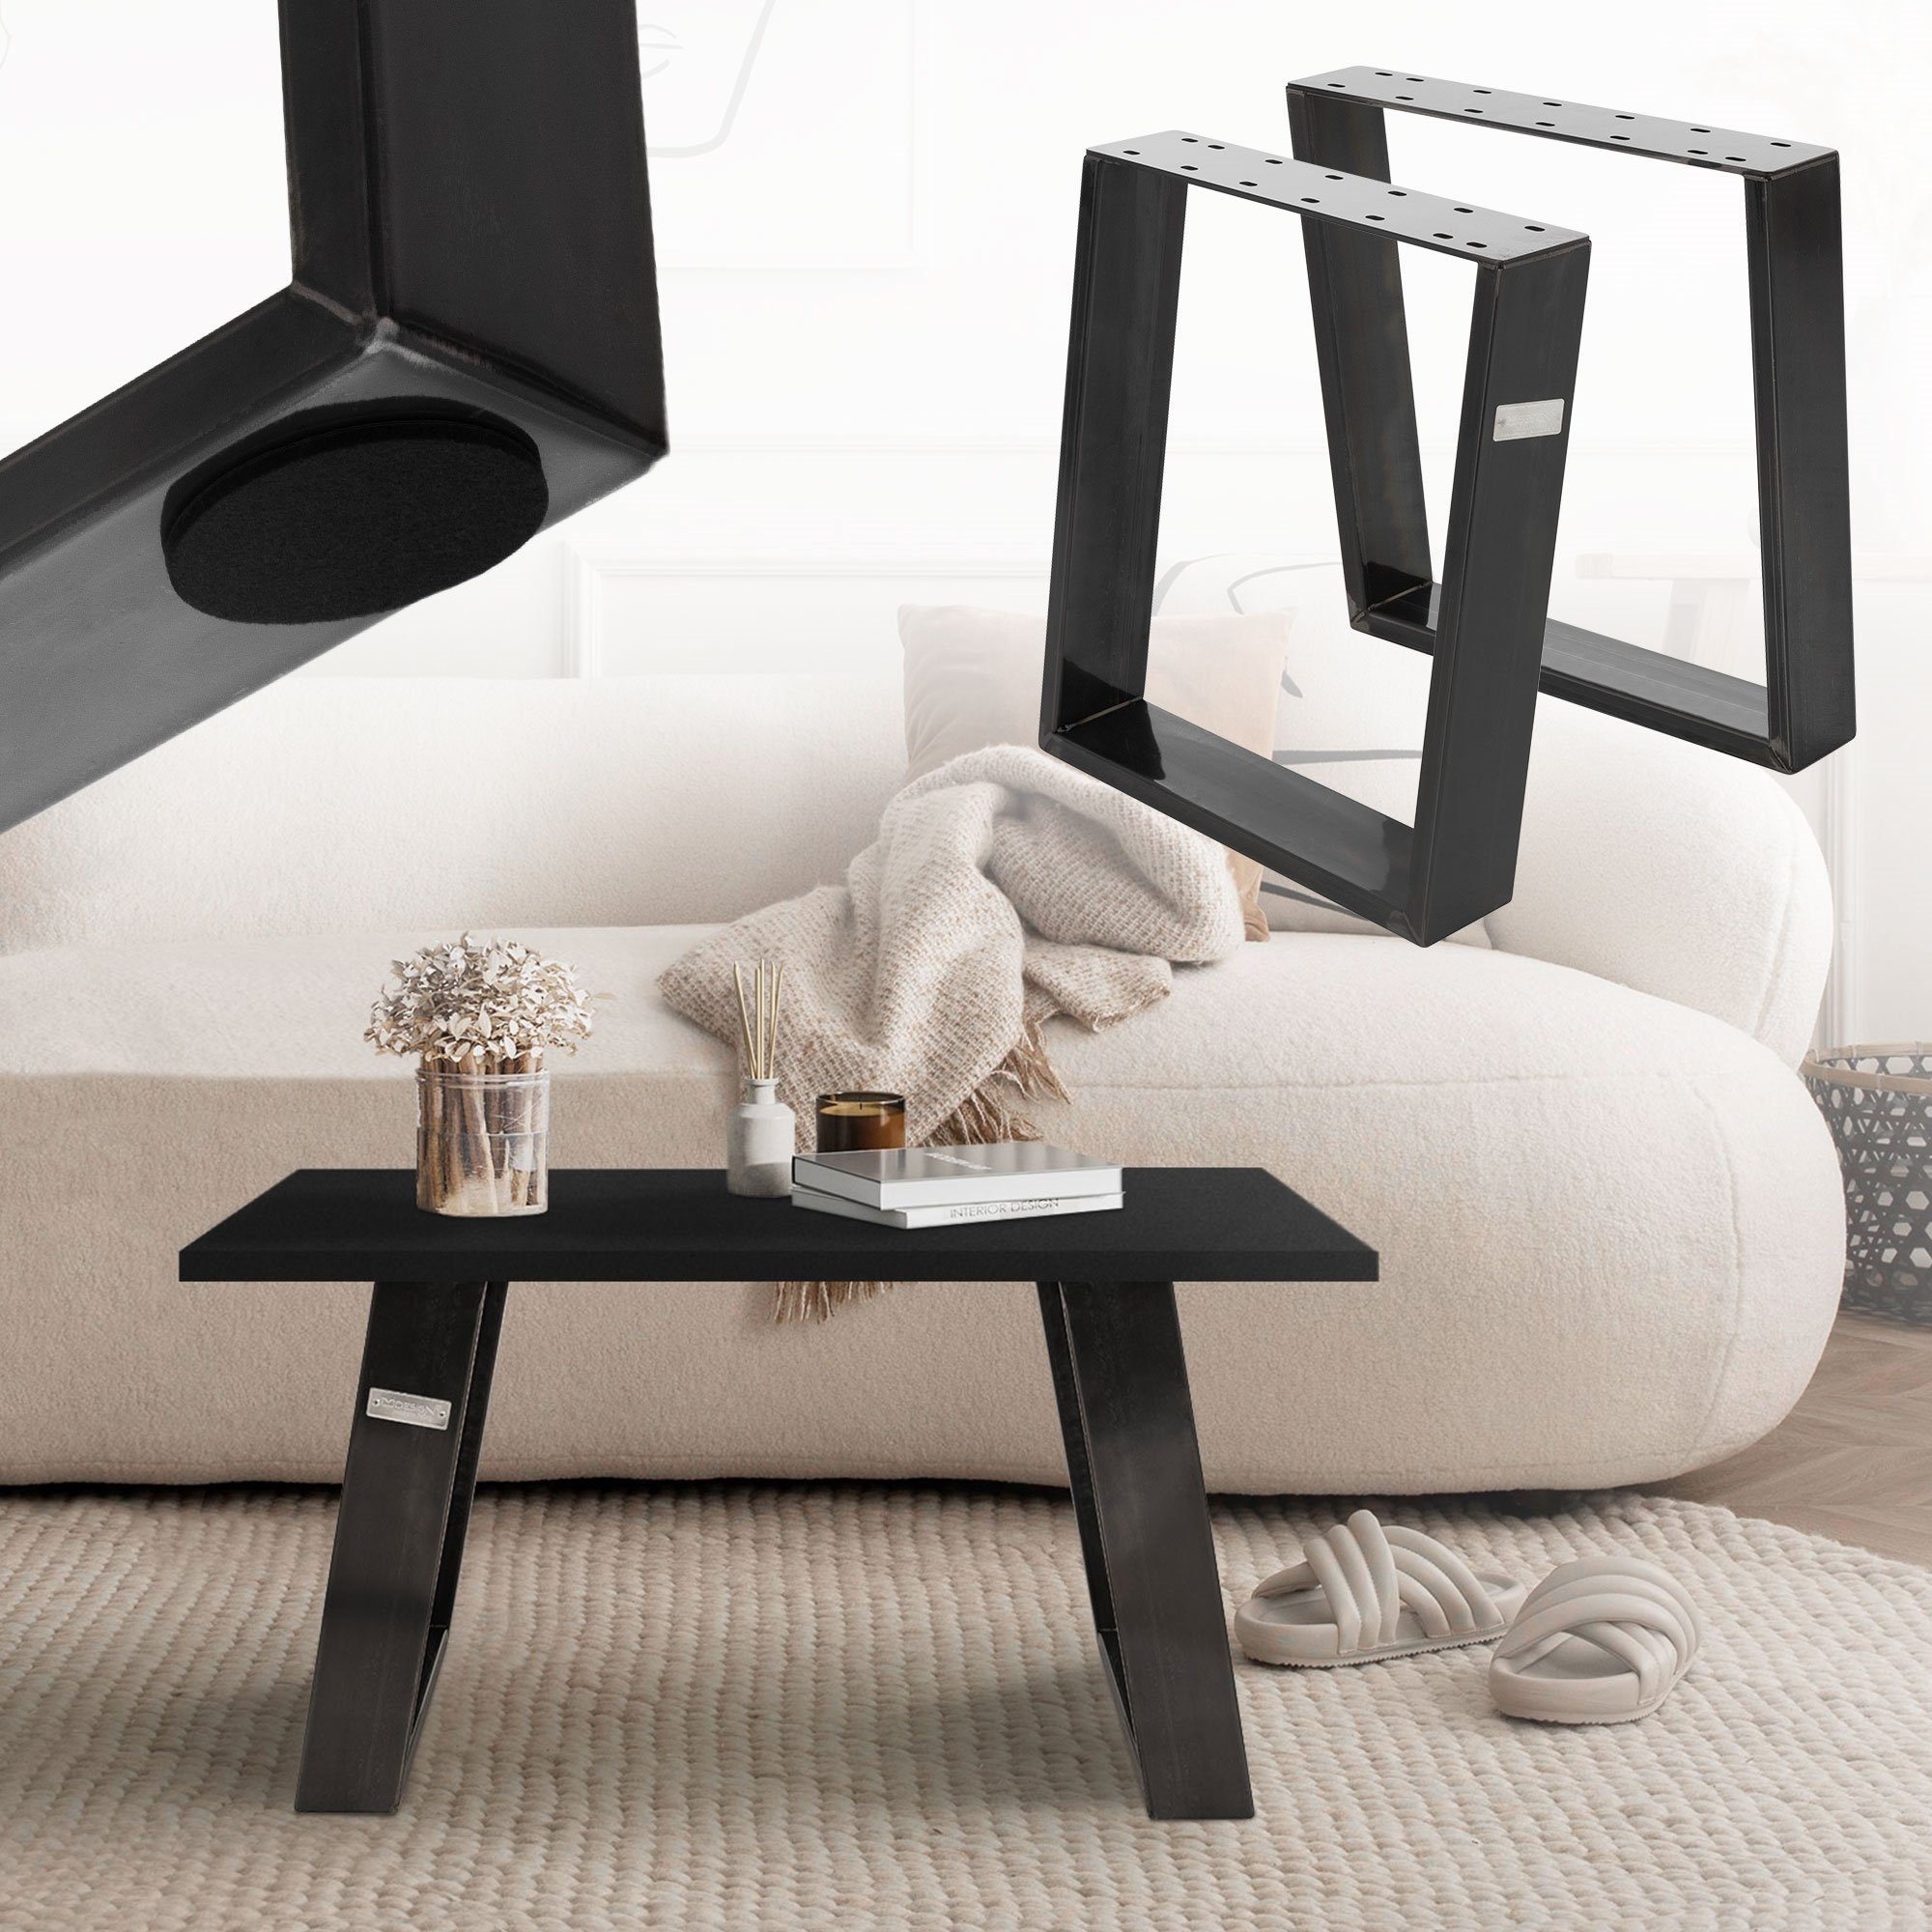 ML-DESIGN Tischbein Tischkufen Möbelkufe, Tischgestell Tischuntergestell Möbelfüße, 2er Set 0GRAD Neigung 40x43cm Industrial